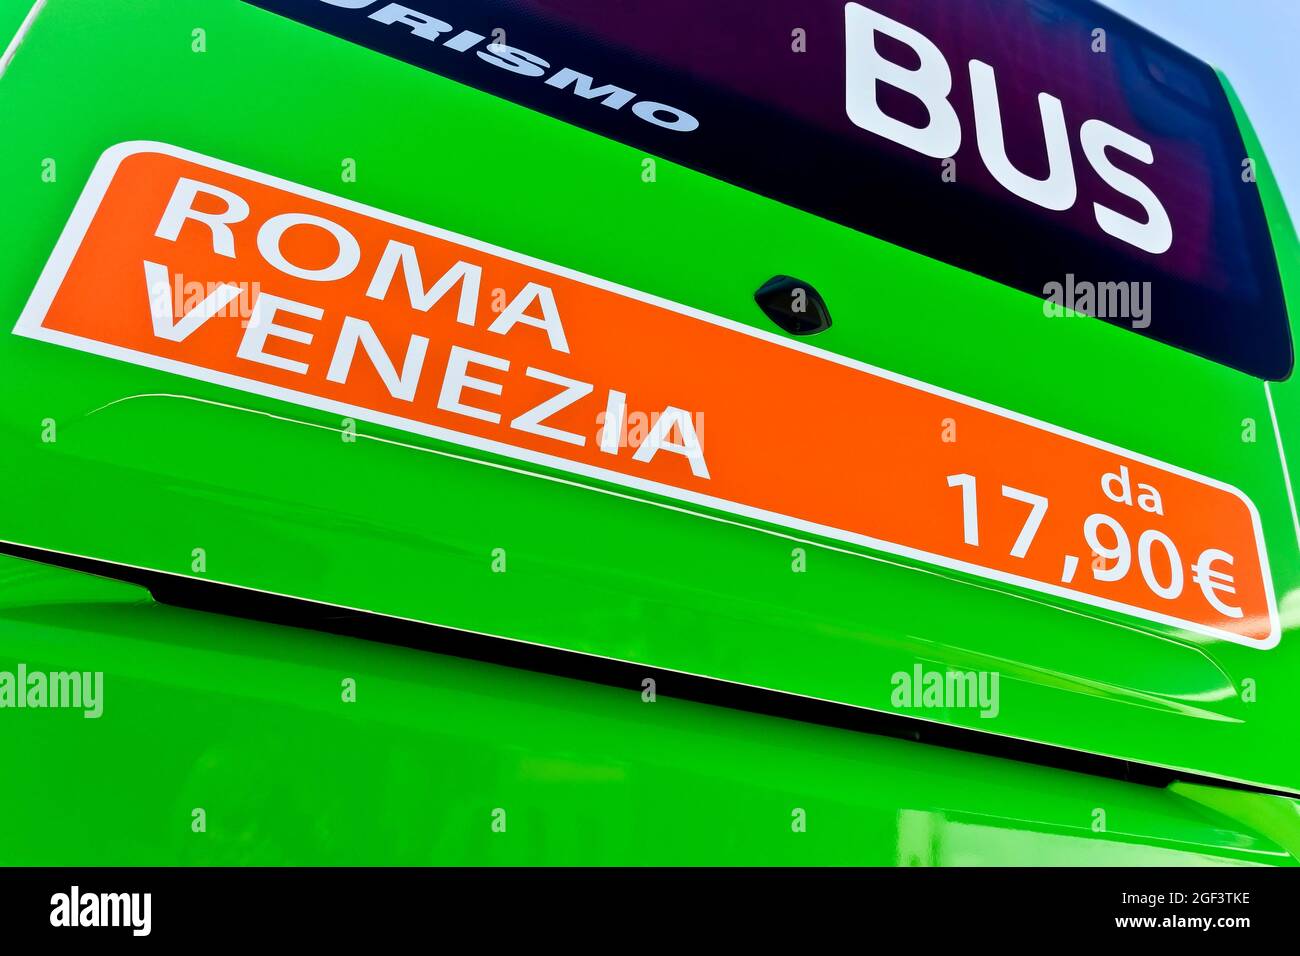 Trasporto in autobus a basso costo. Pubblicità sul pullman posteriore che fa pubblicità a tariffe basse da Roma a Venezia. Servizio di autobus Intercity in Europa. Foto Stock